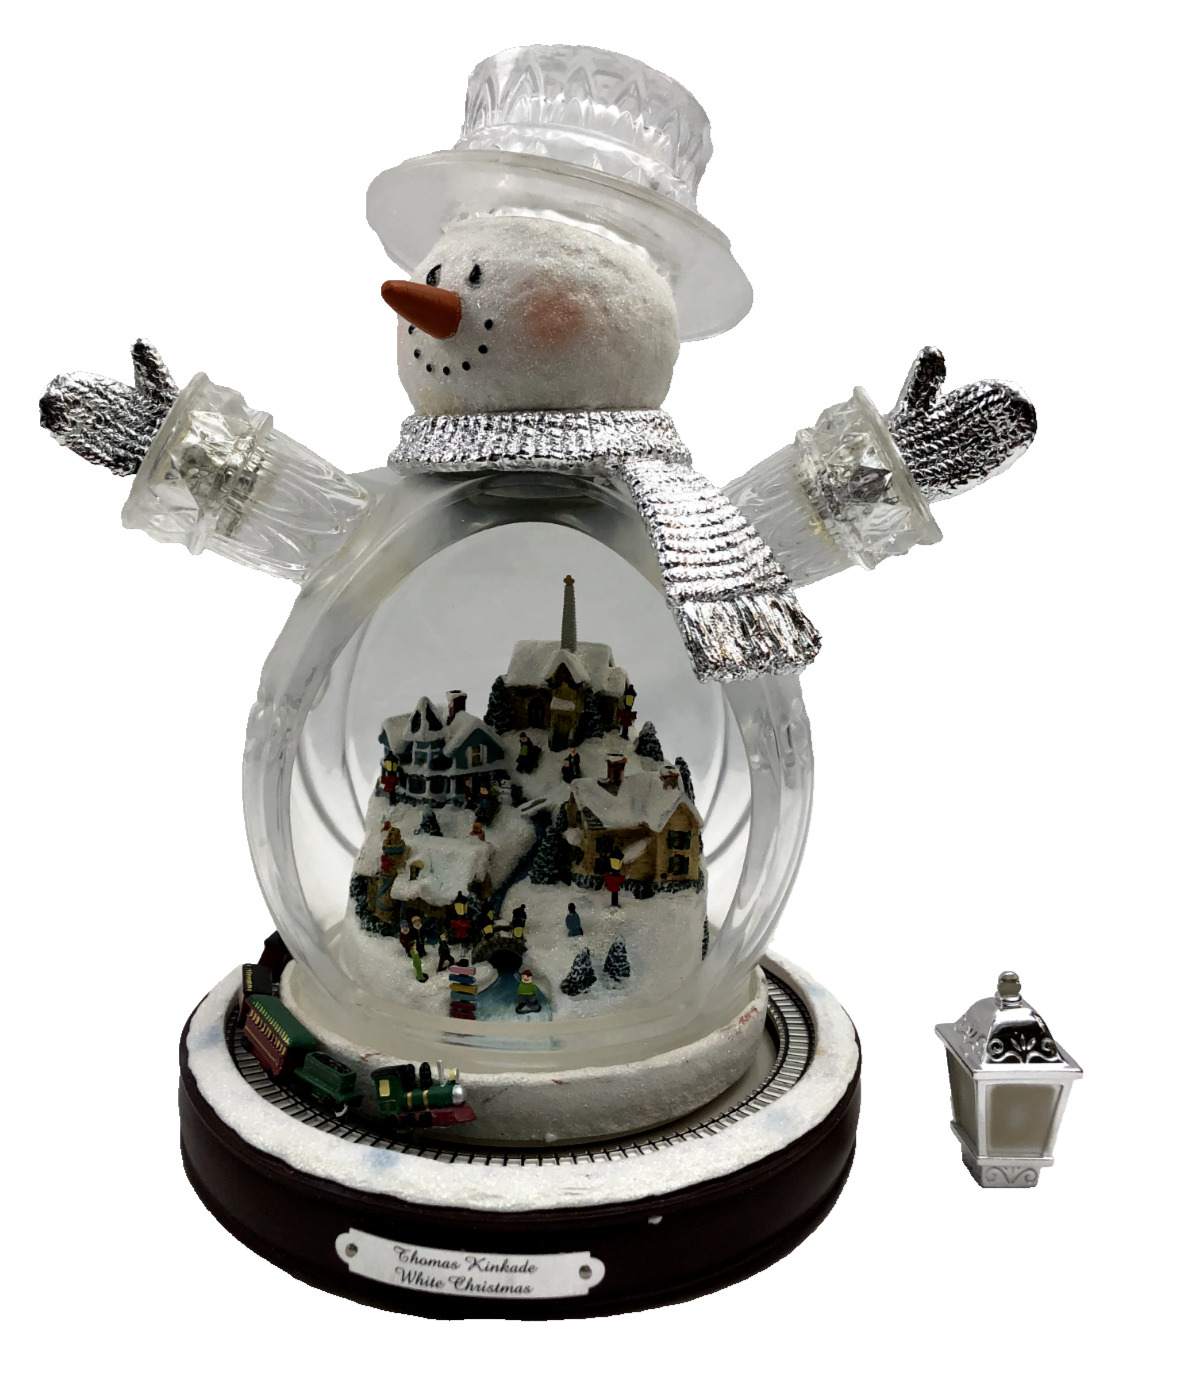 Thomas Kinkade Masterpiece Edition White Christmas Snowman Motion Train with COA